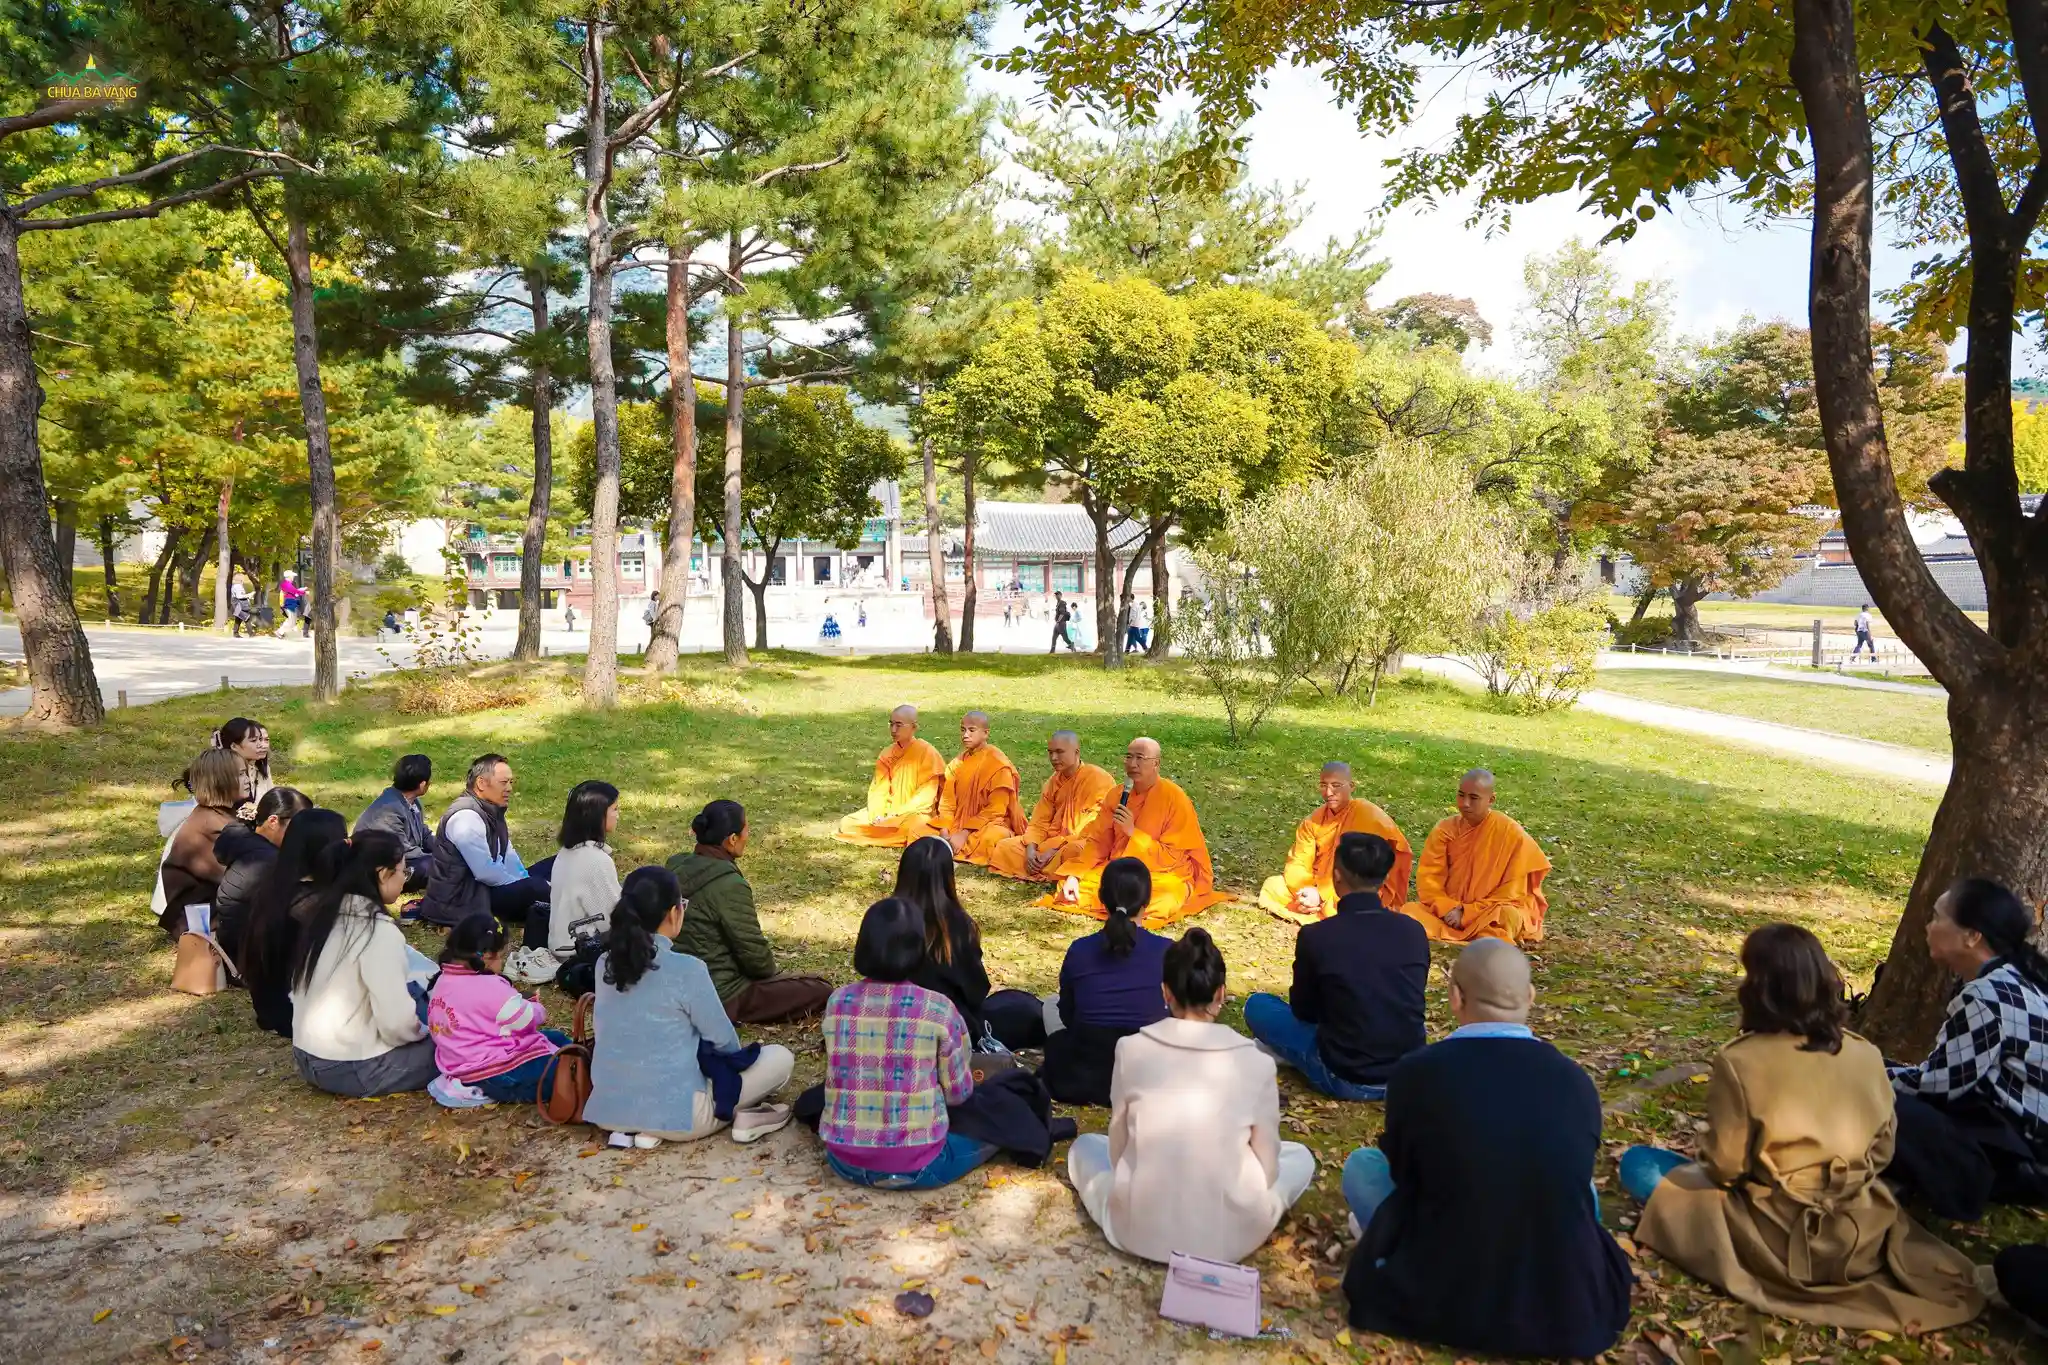 Tại cung điện Gyeongbokgung của Hàn Quốc, Sư Phụ căn dặn các Phật tử làm thiện trong tâm Bồ đề từ bài học về đời sống của những người sống trong hoàng cung thuở xưa